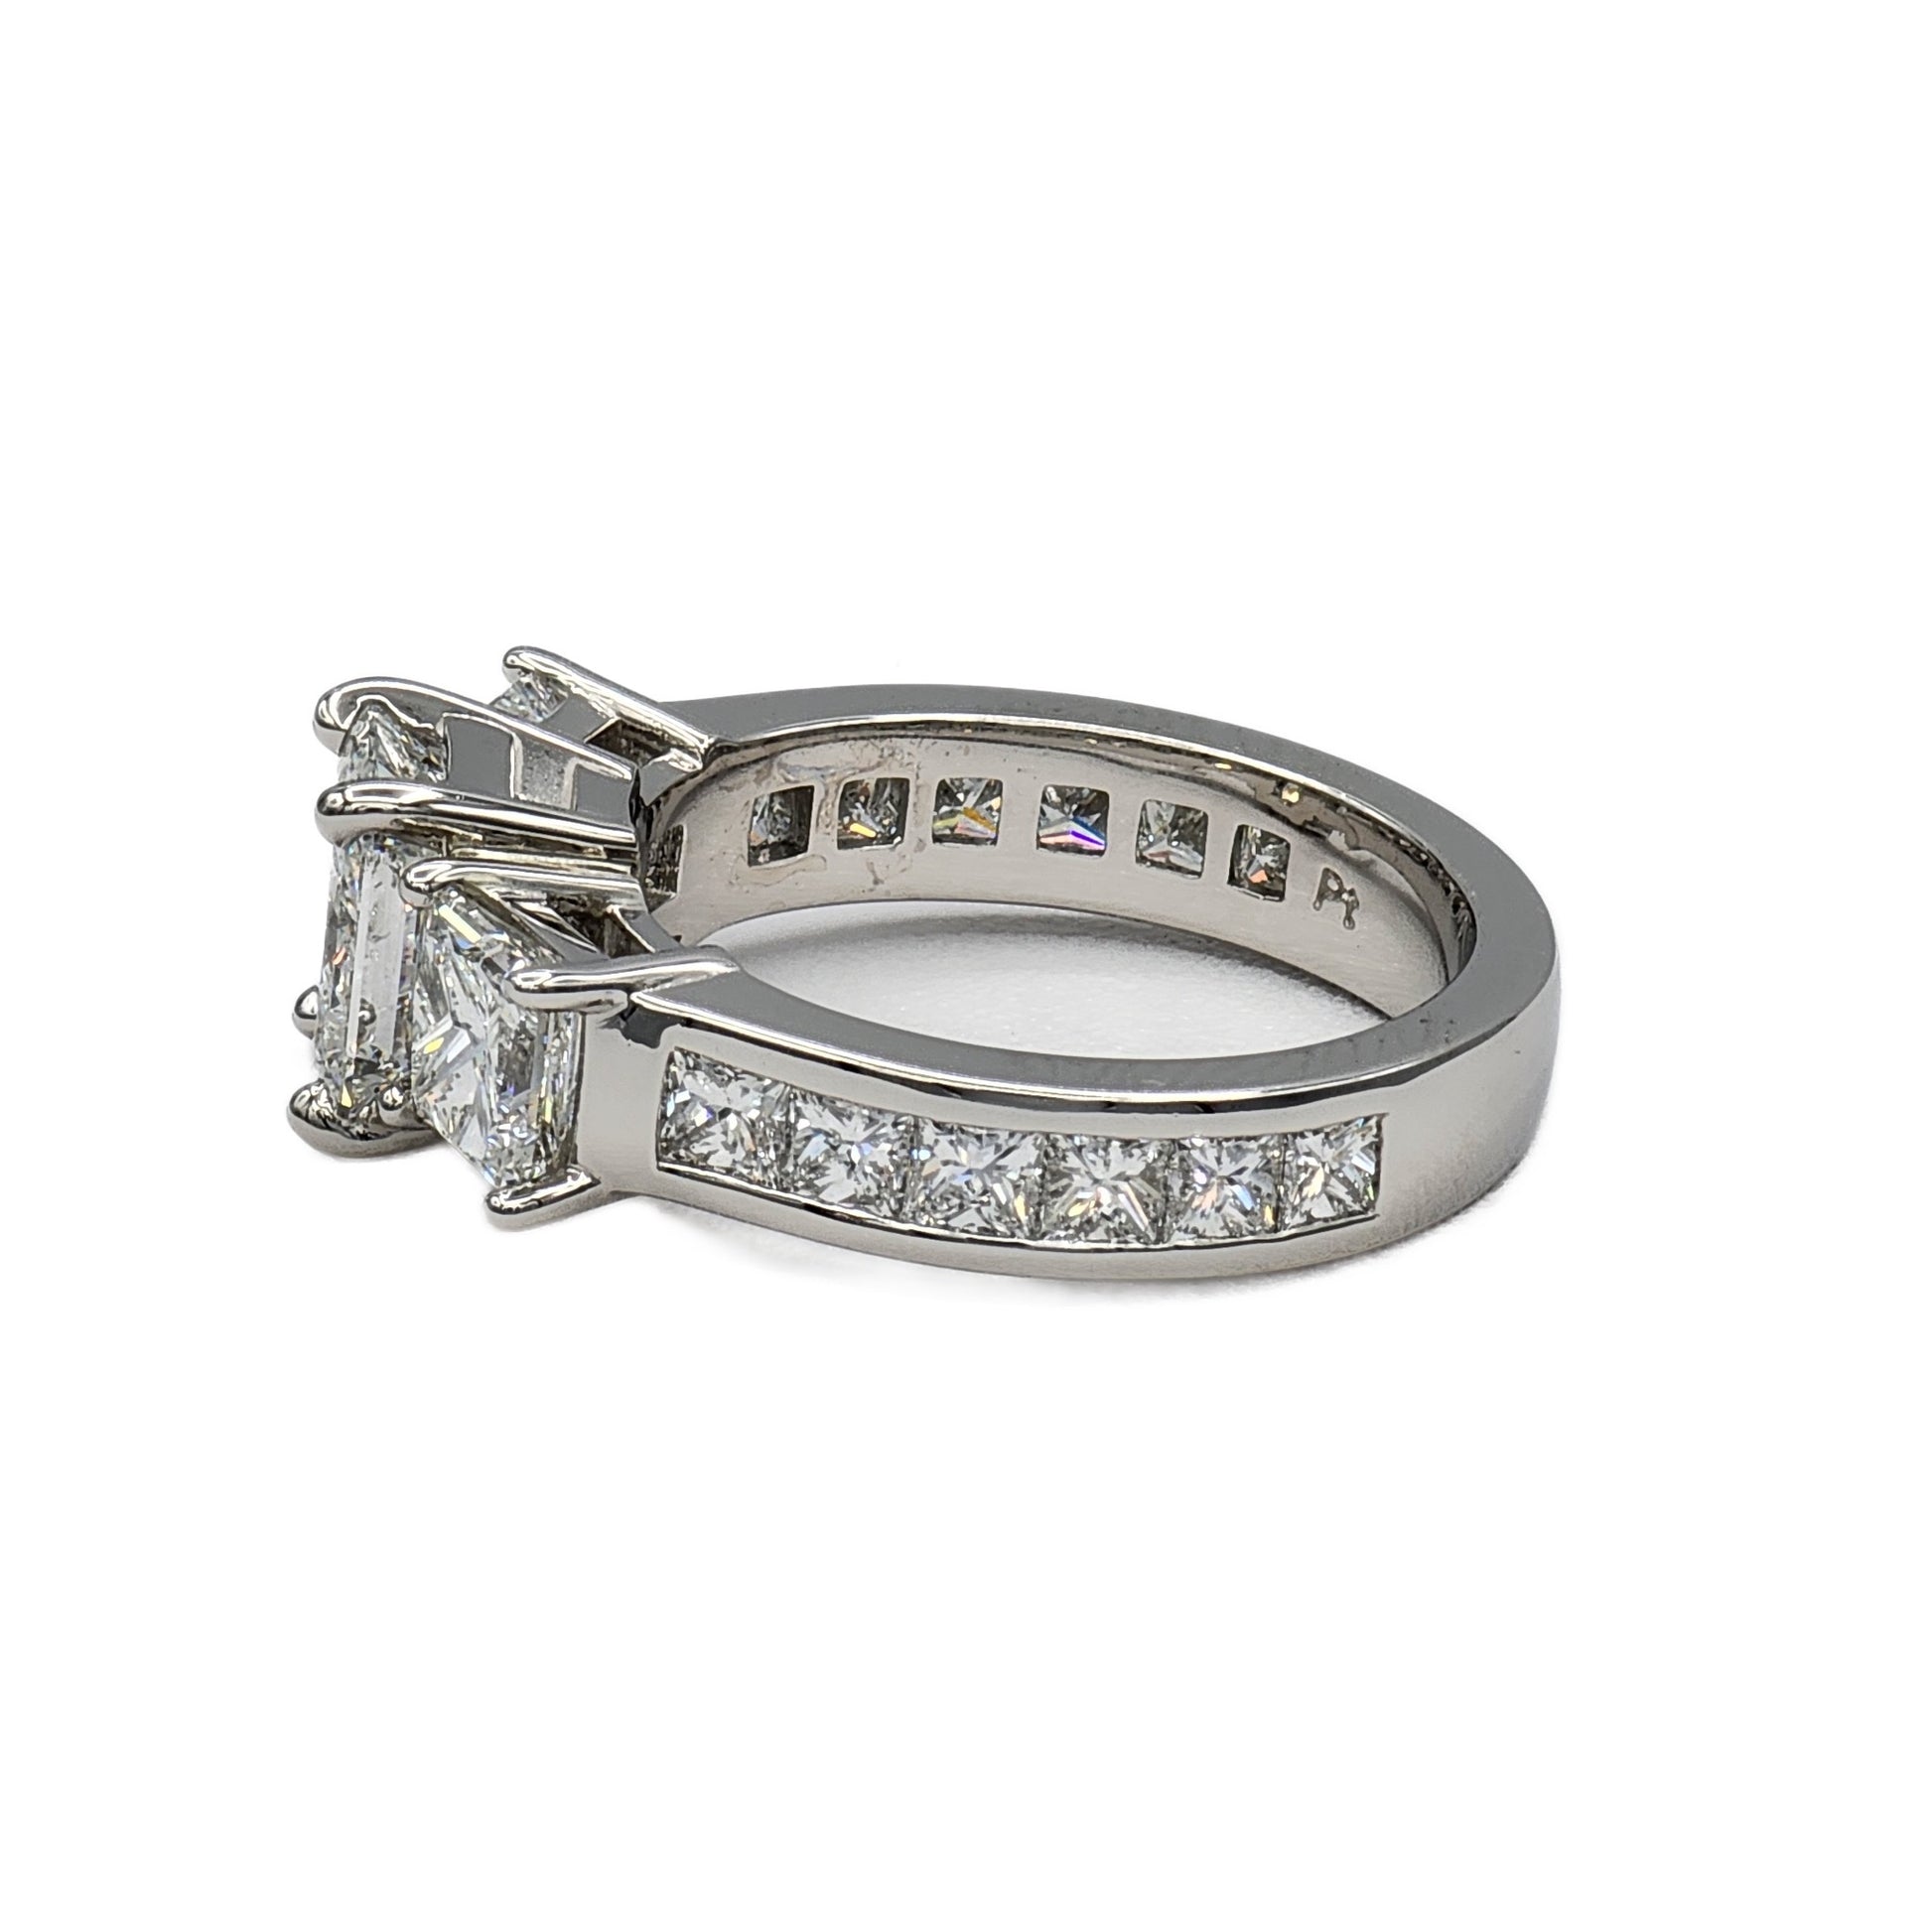 Platinum 1.78 Carat Radiant Cut Diamond Ring